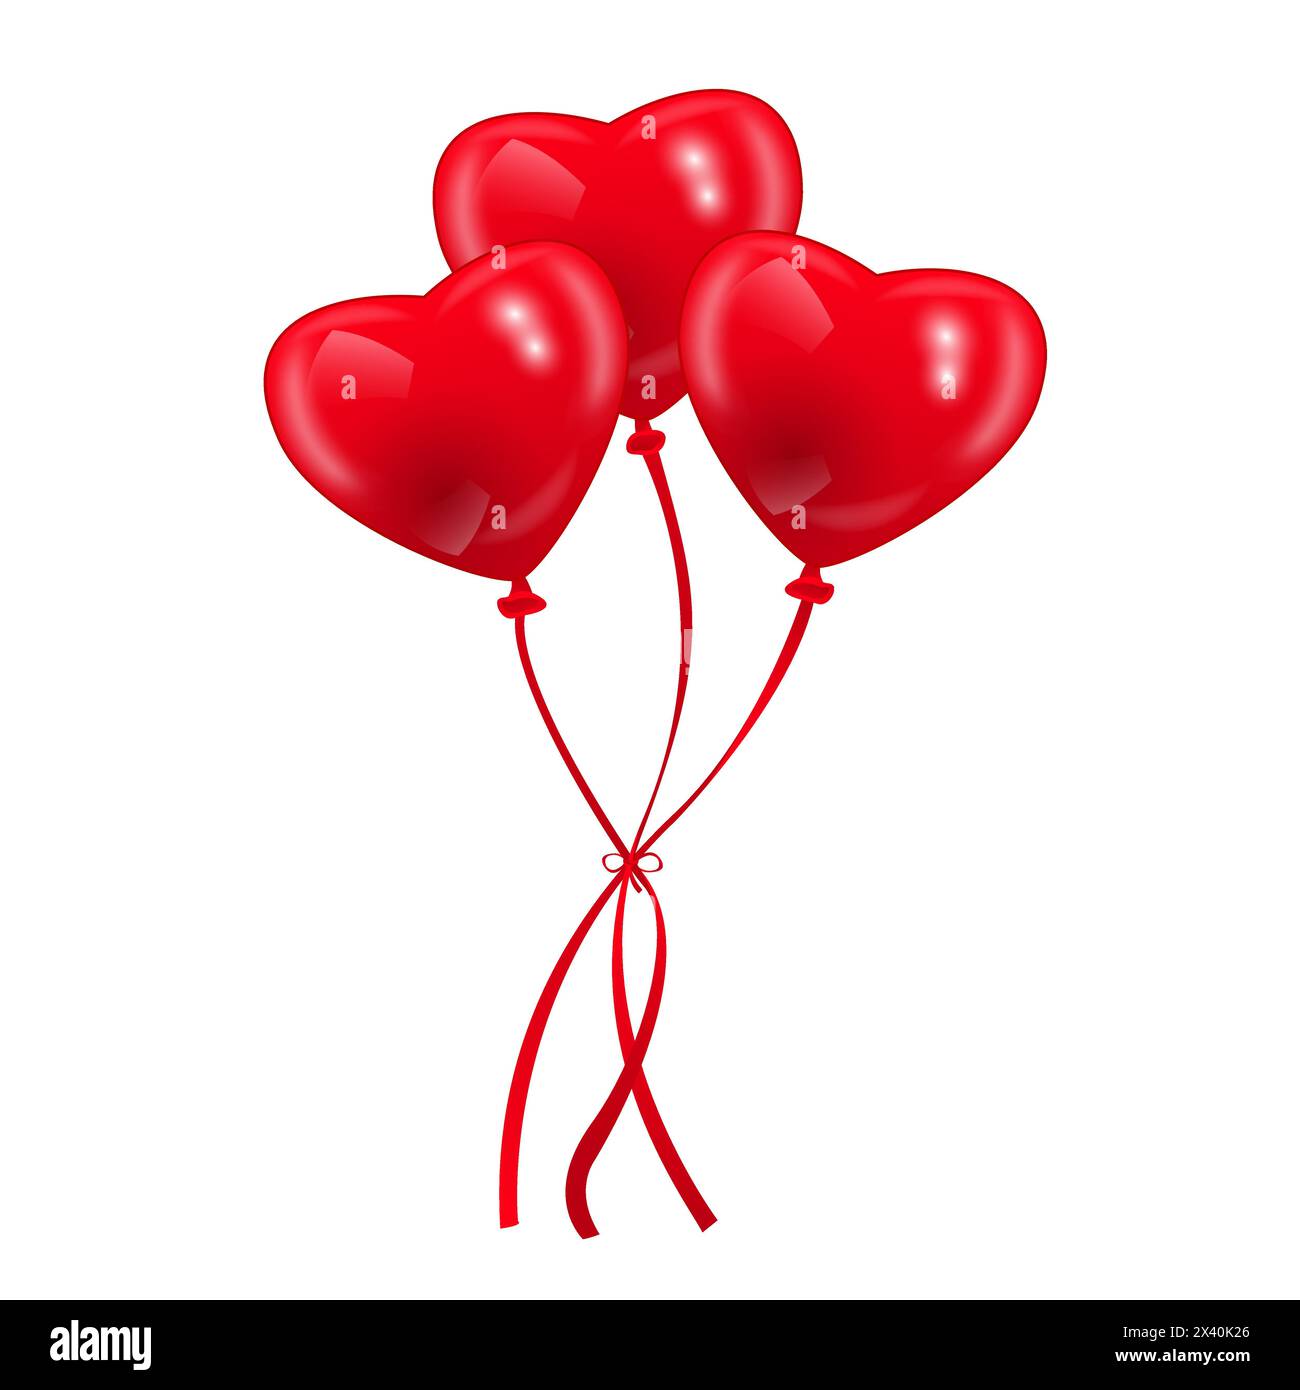 Bild von herzförmigen roten Ballons, Vektor eps 10 Illustration Stock Vektor